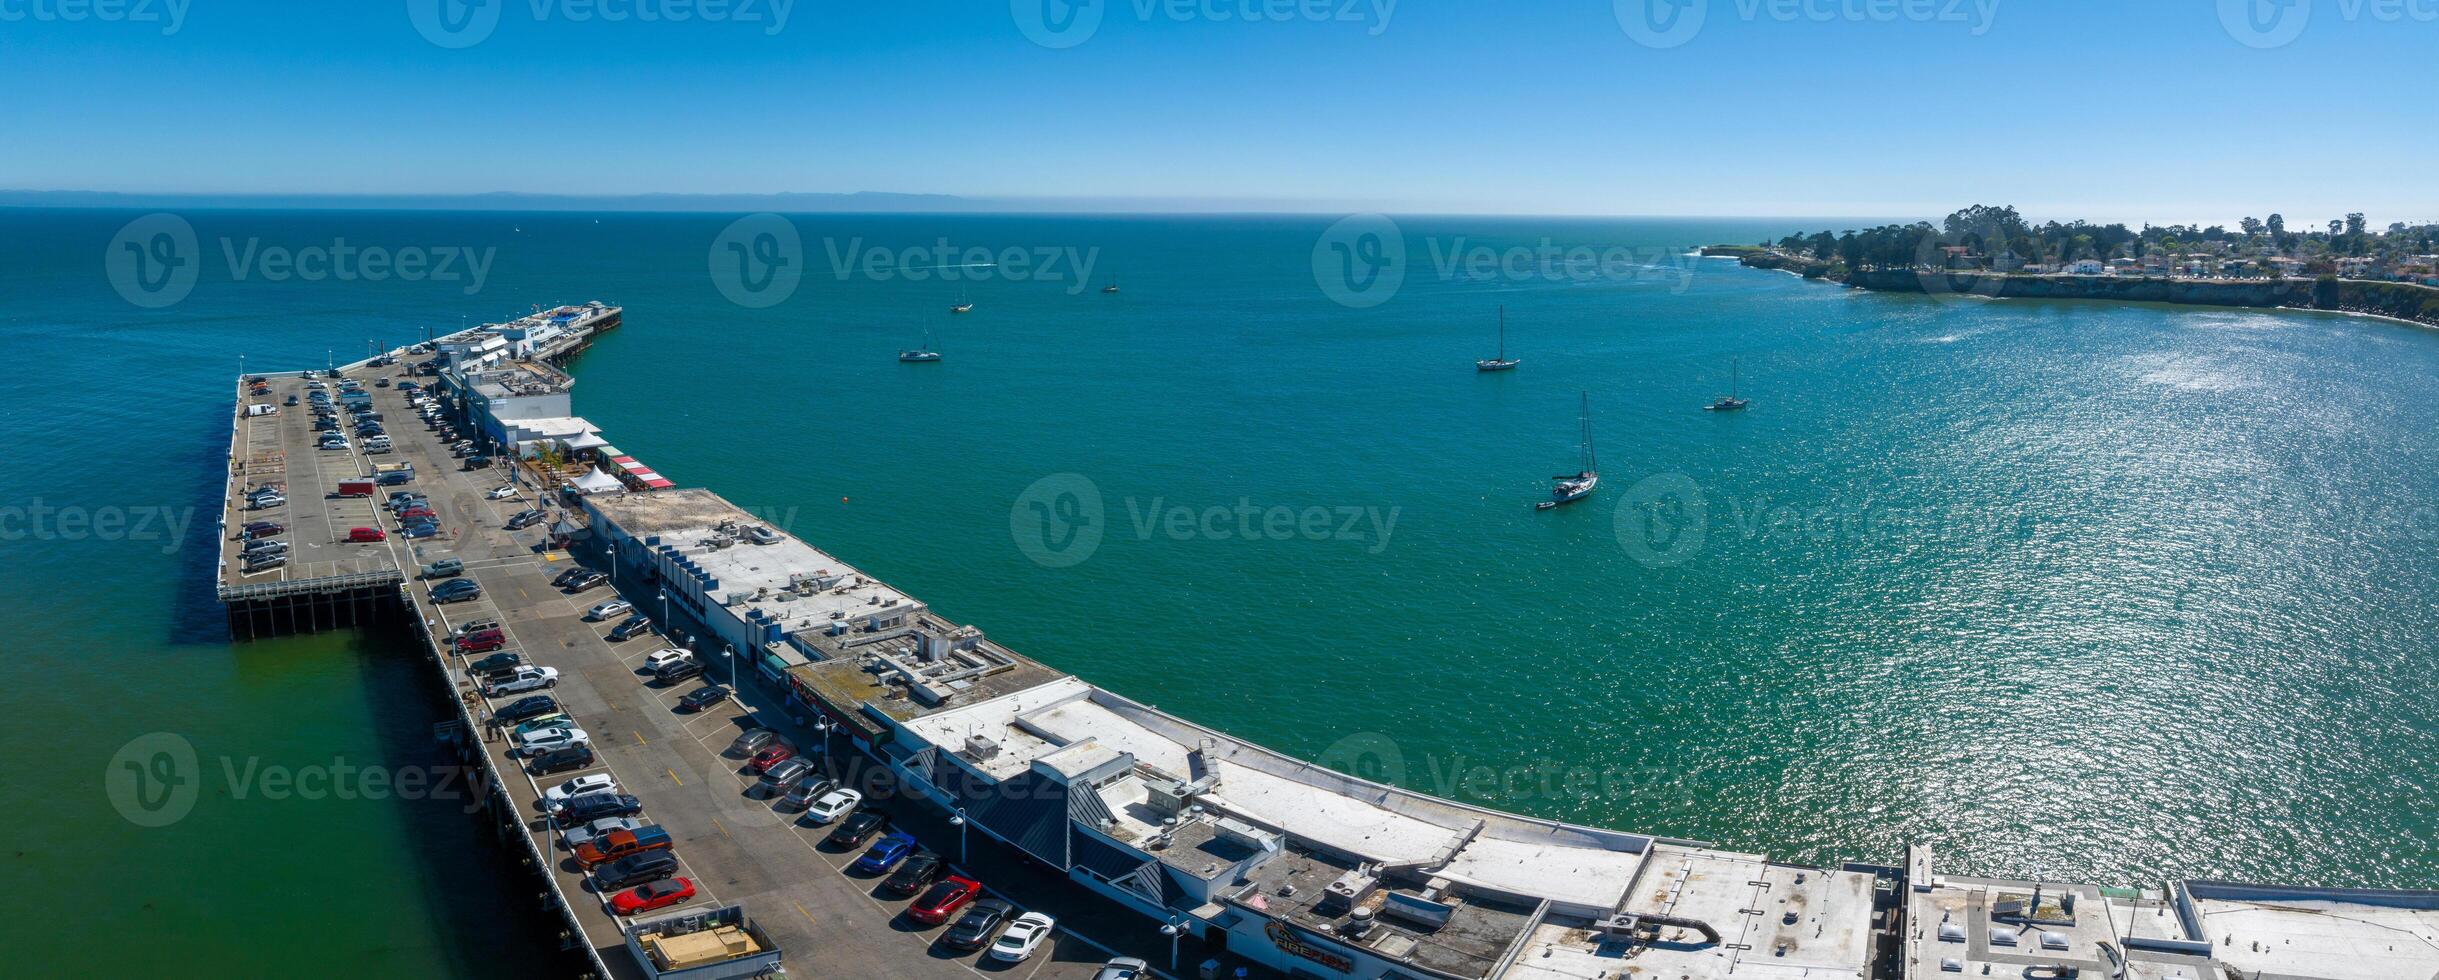 Aerial view of the Santa Cruz beach town in California. photo